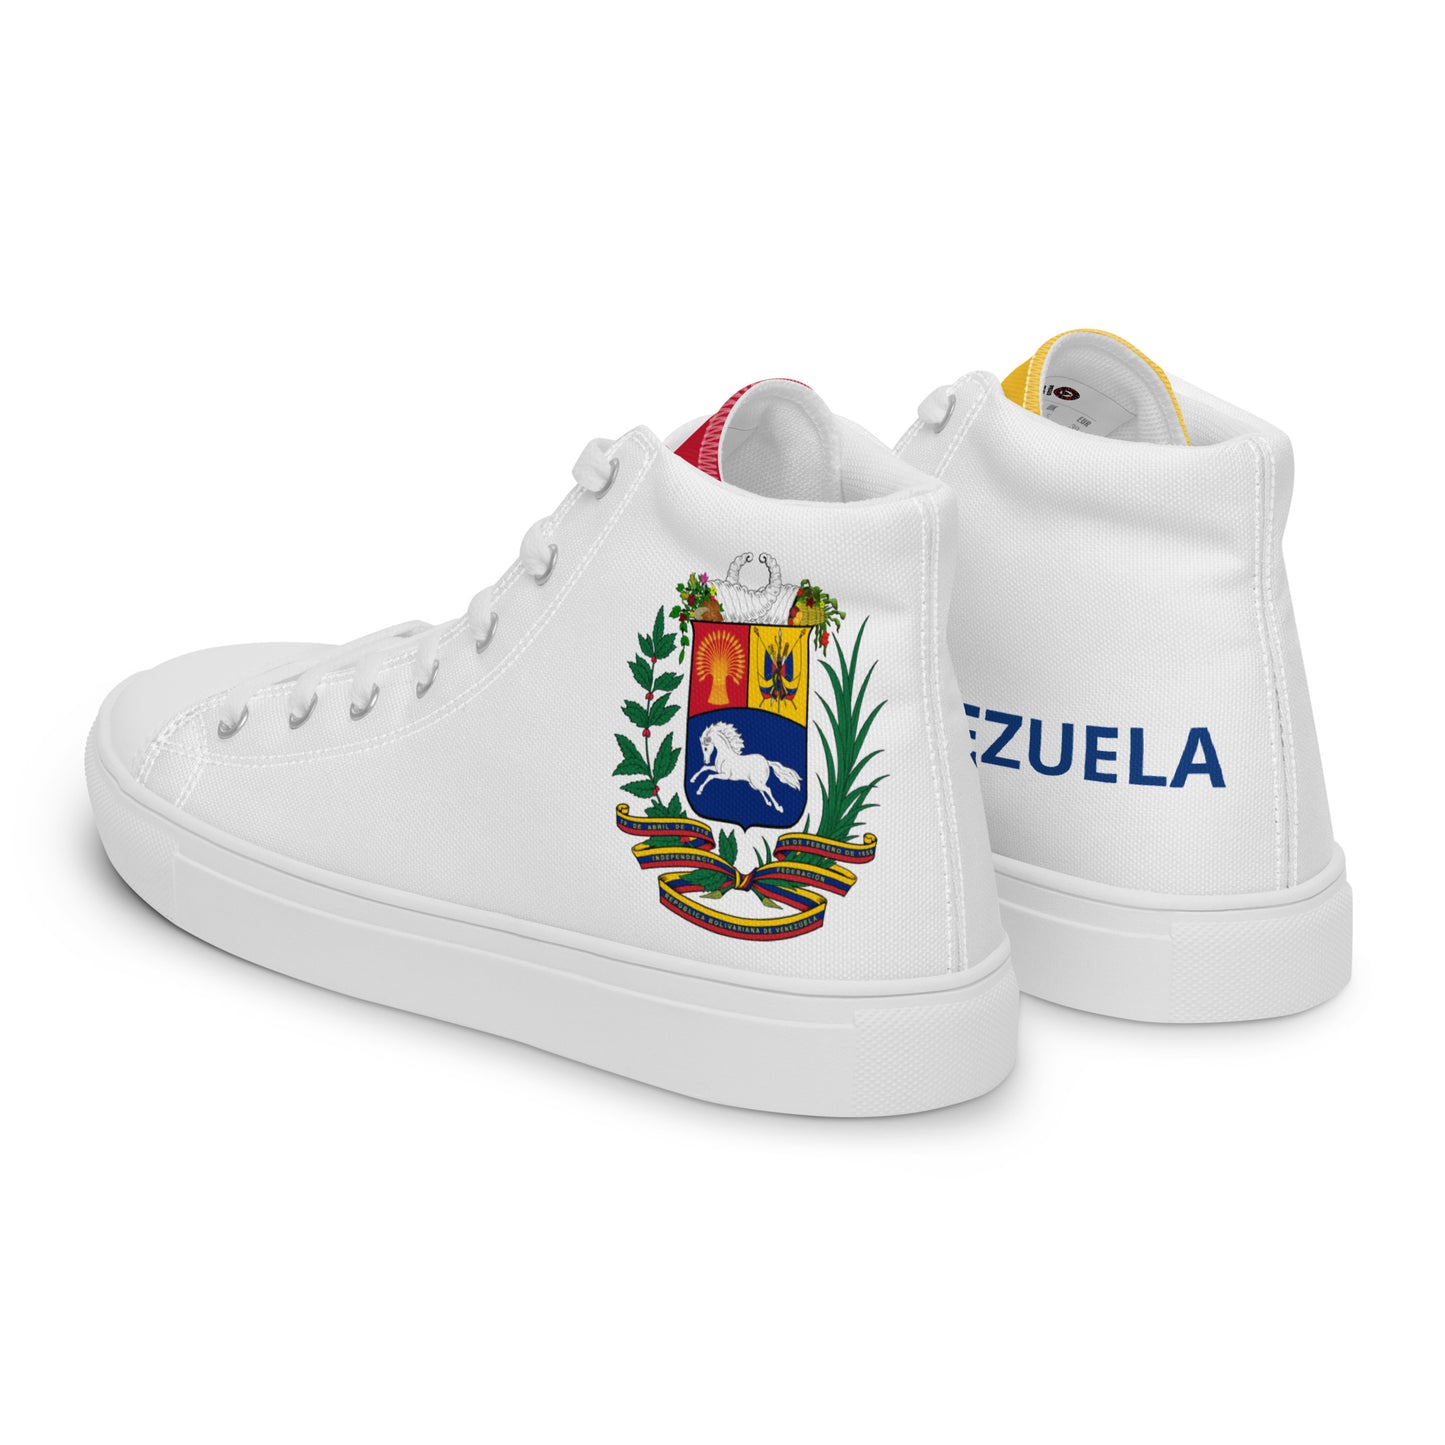 Venezuela - Mujer - Blanco - Zapatos High top